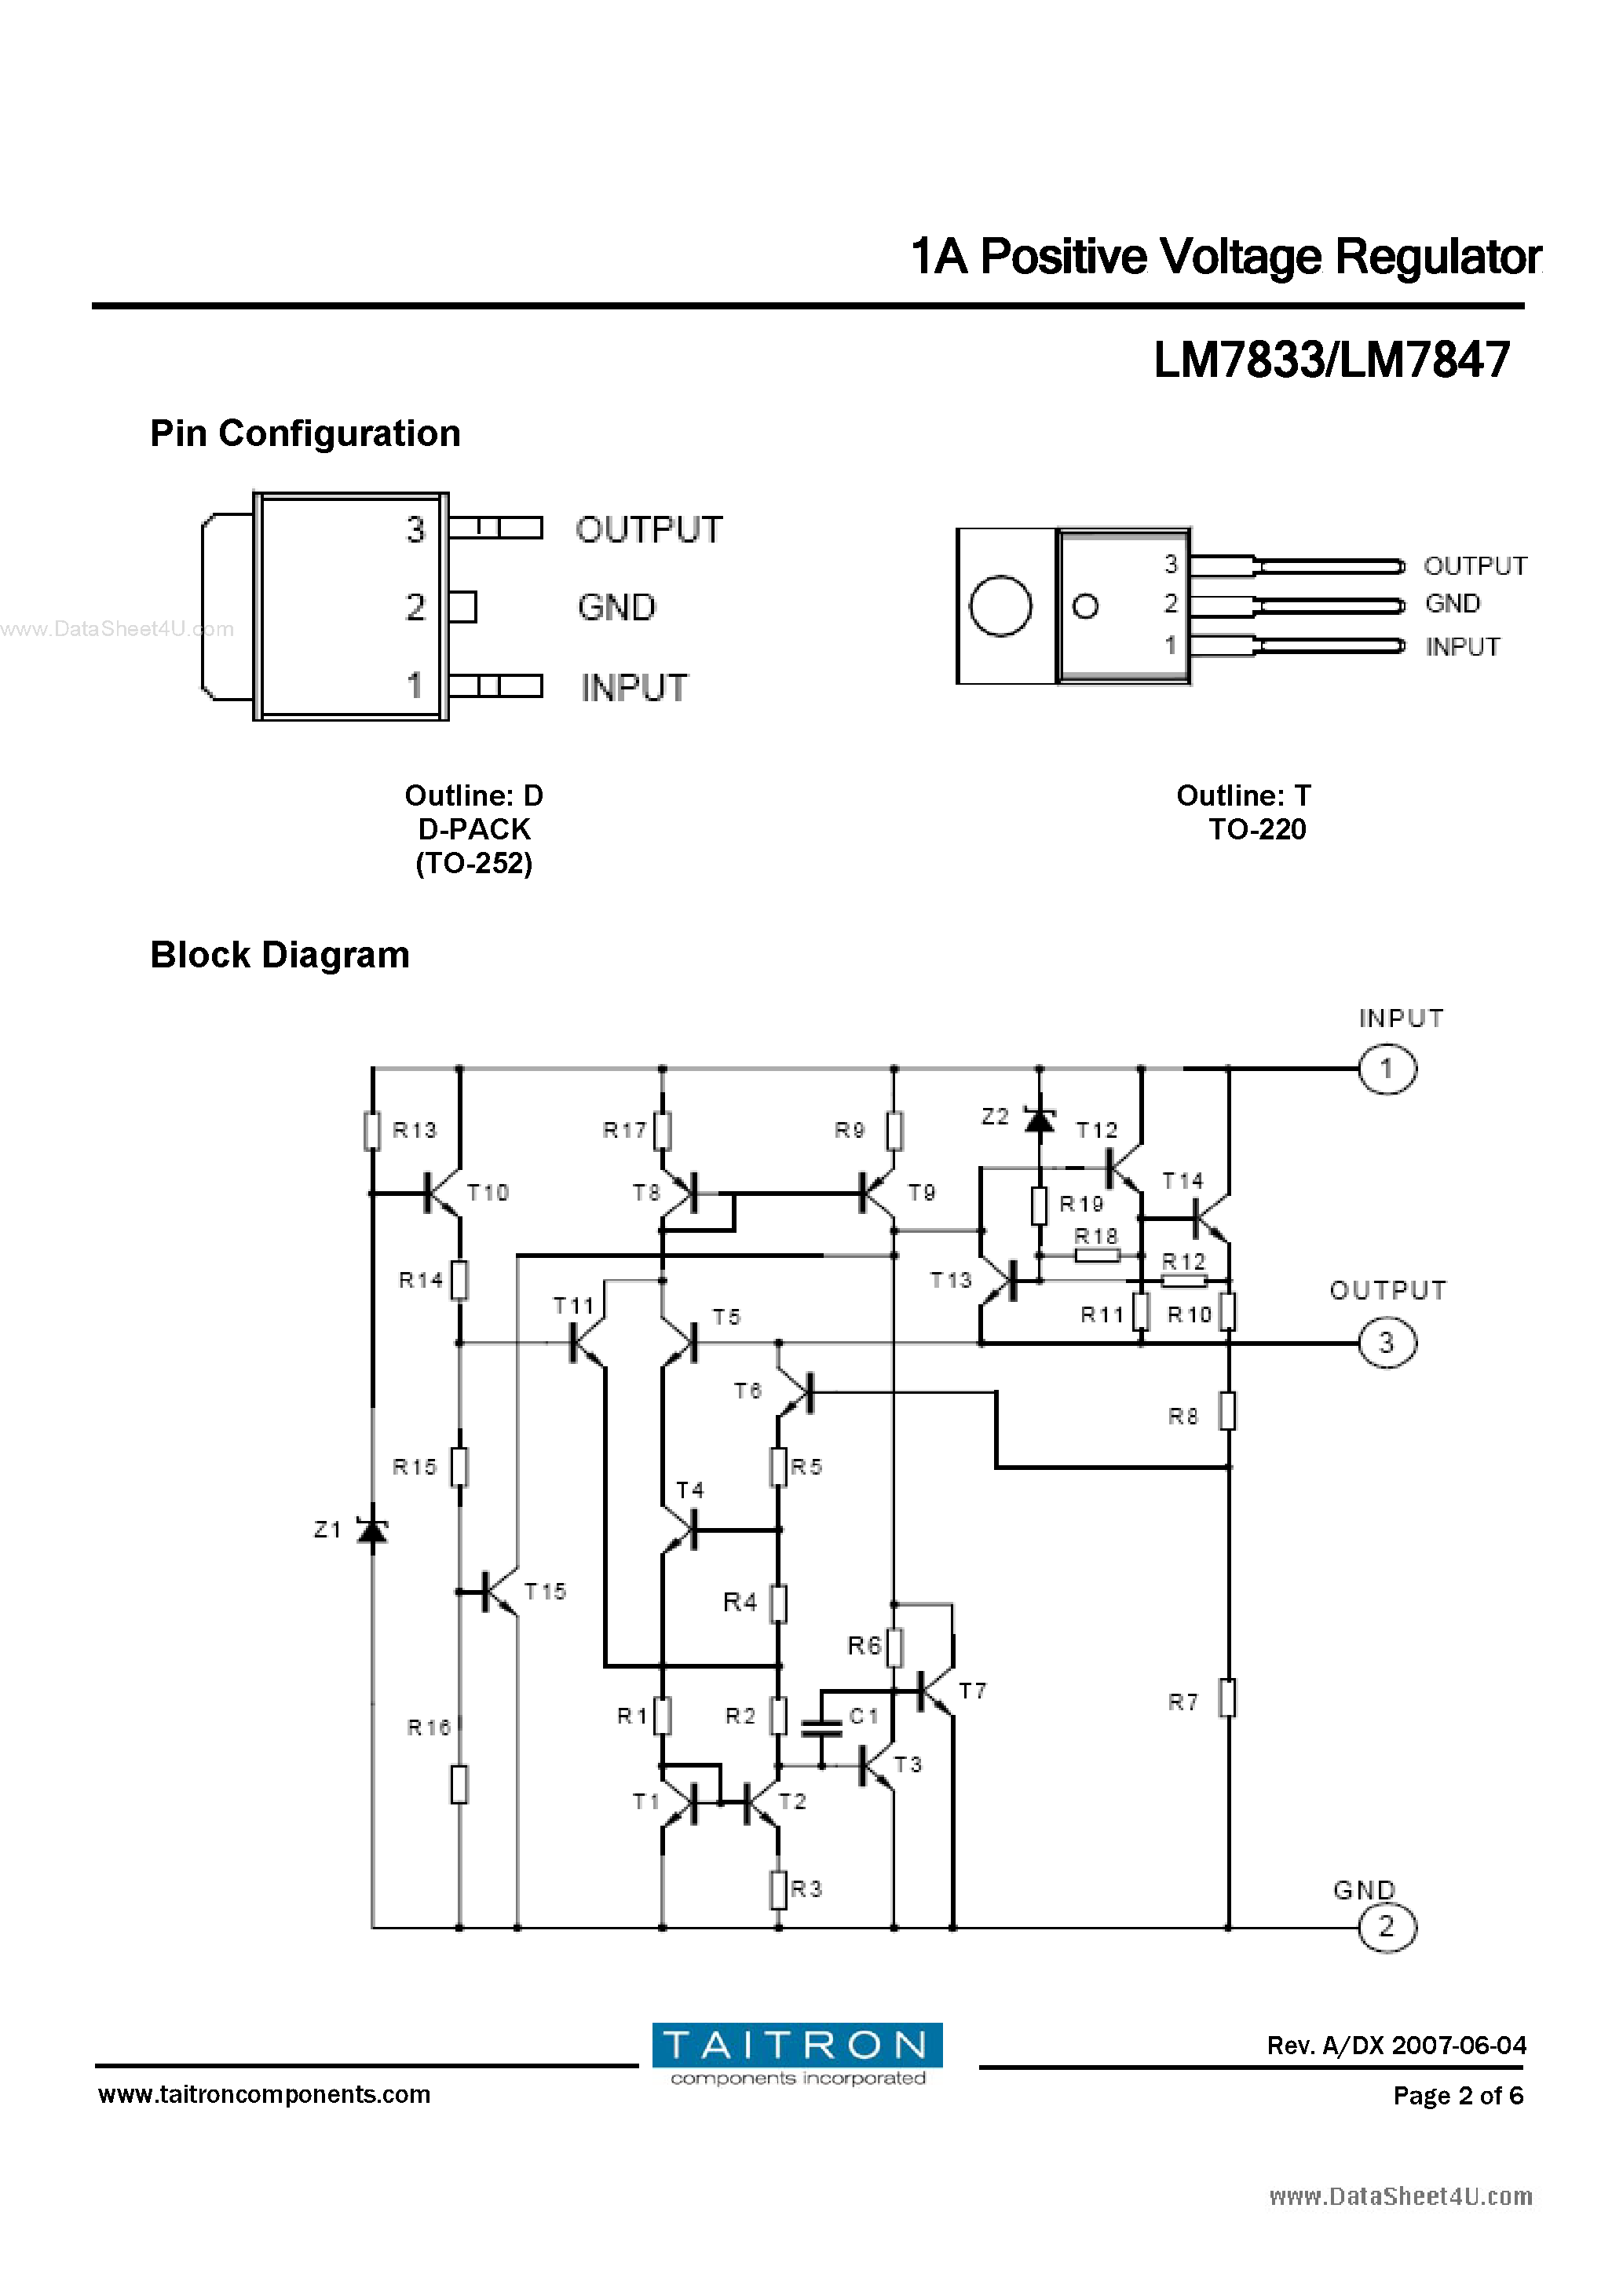 Datasheet LM7833 - (LM7833 / LM7847) 1A Positive Voltage Regulator page 2